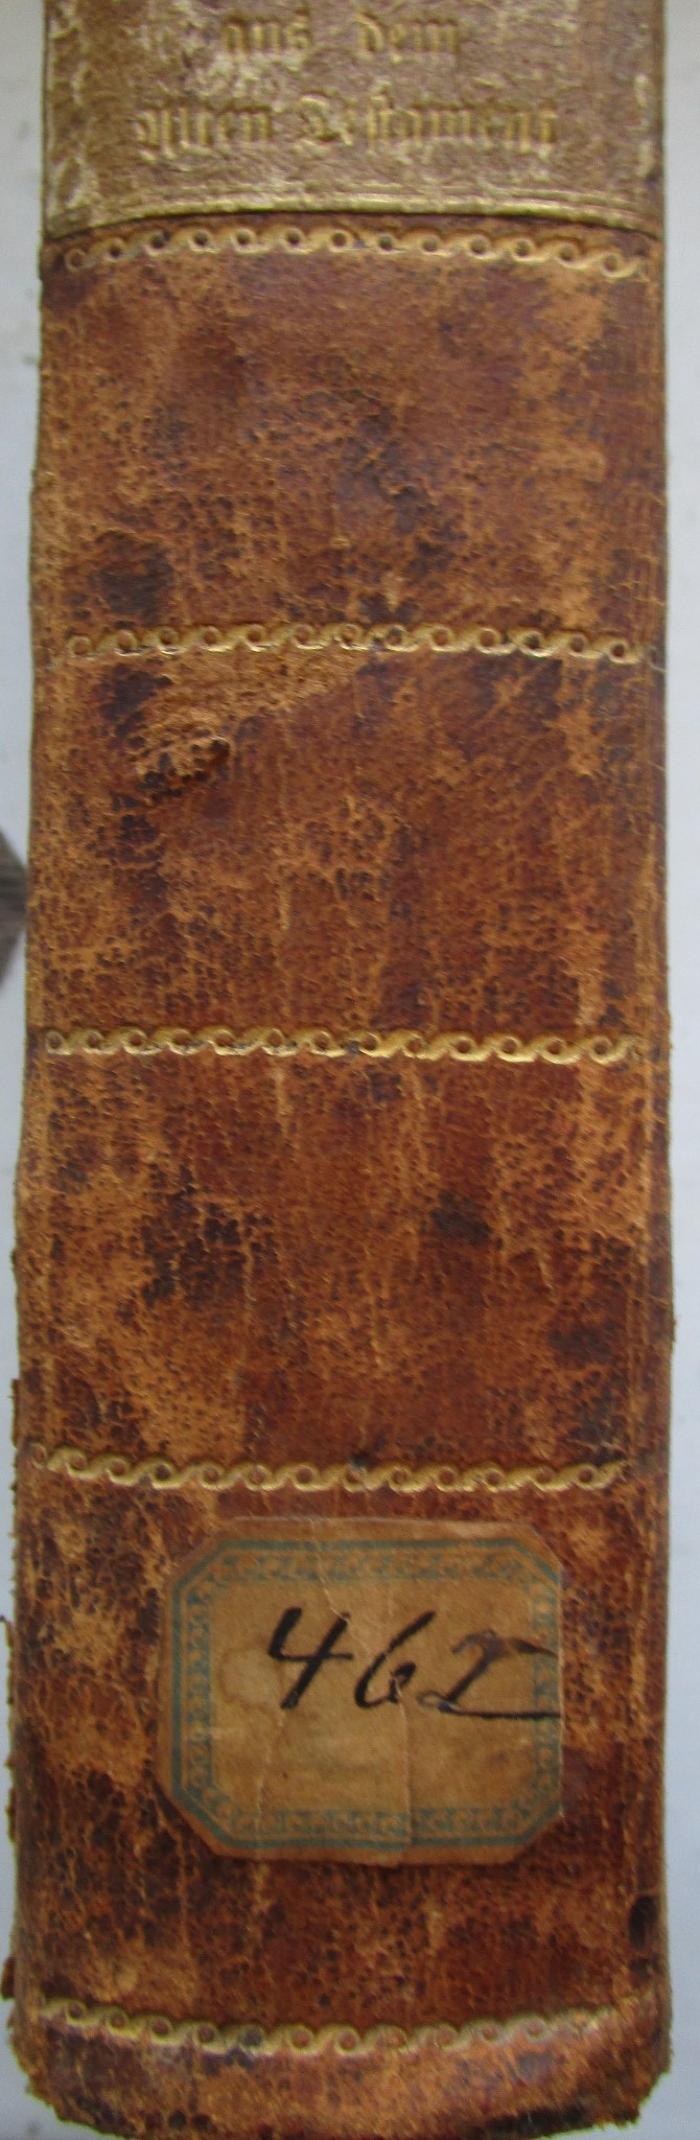  Historische Auszug aus den Büchern des alten Testaments (1799);-, Von Hand: Signatur; '46 I'